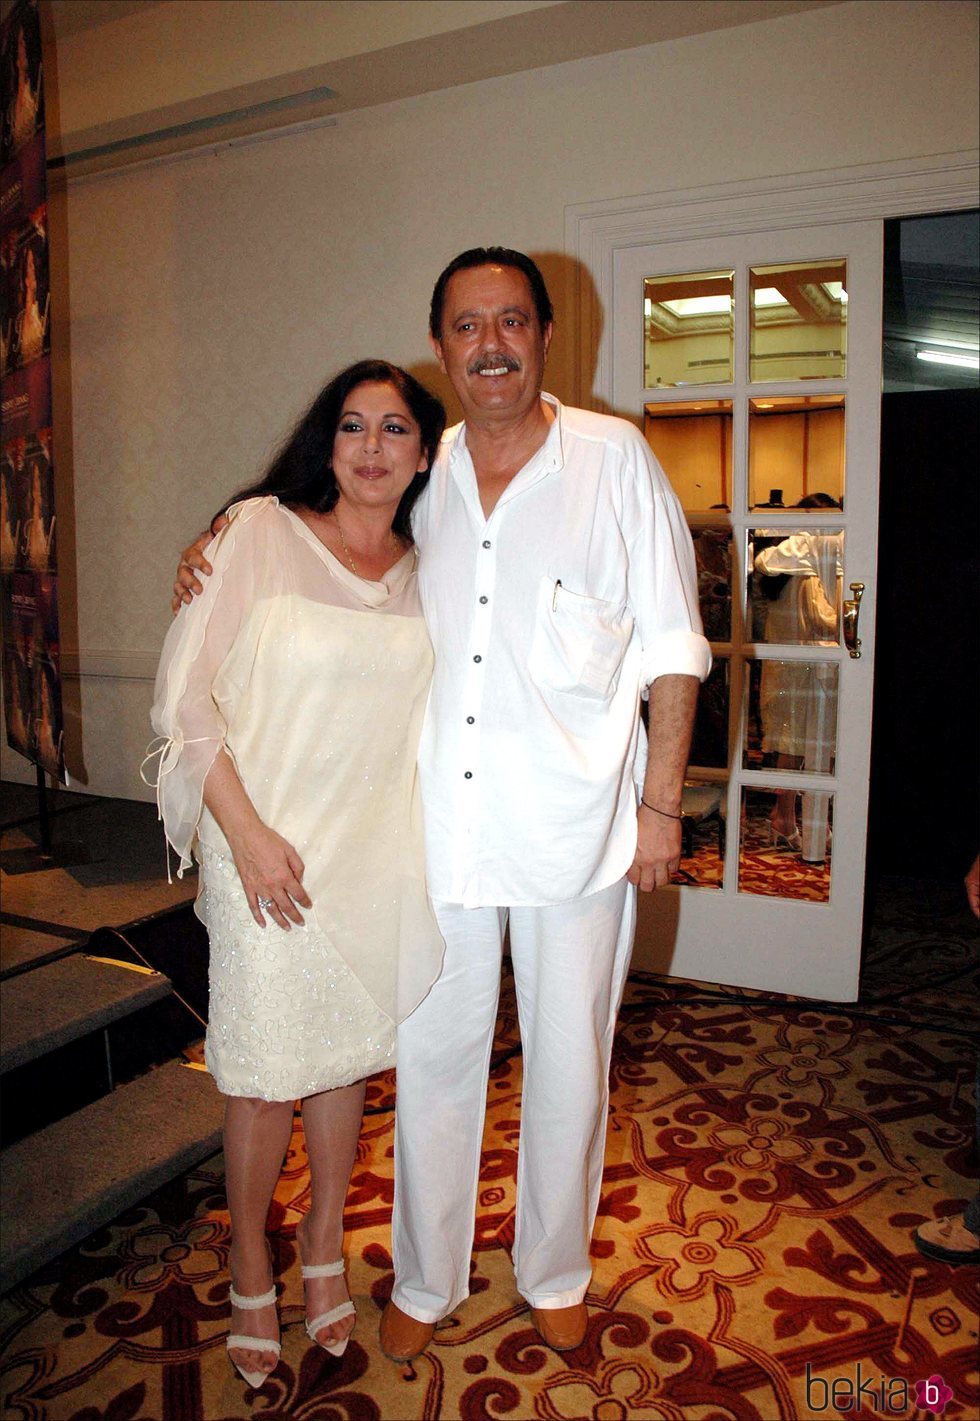 Isabel Pantoja y Julián Muñoz